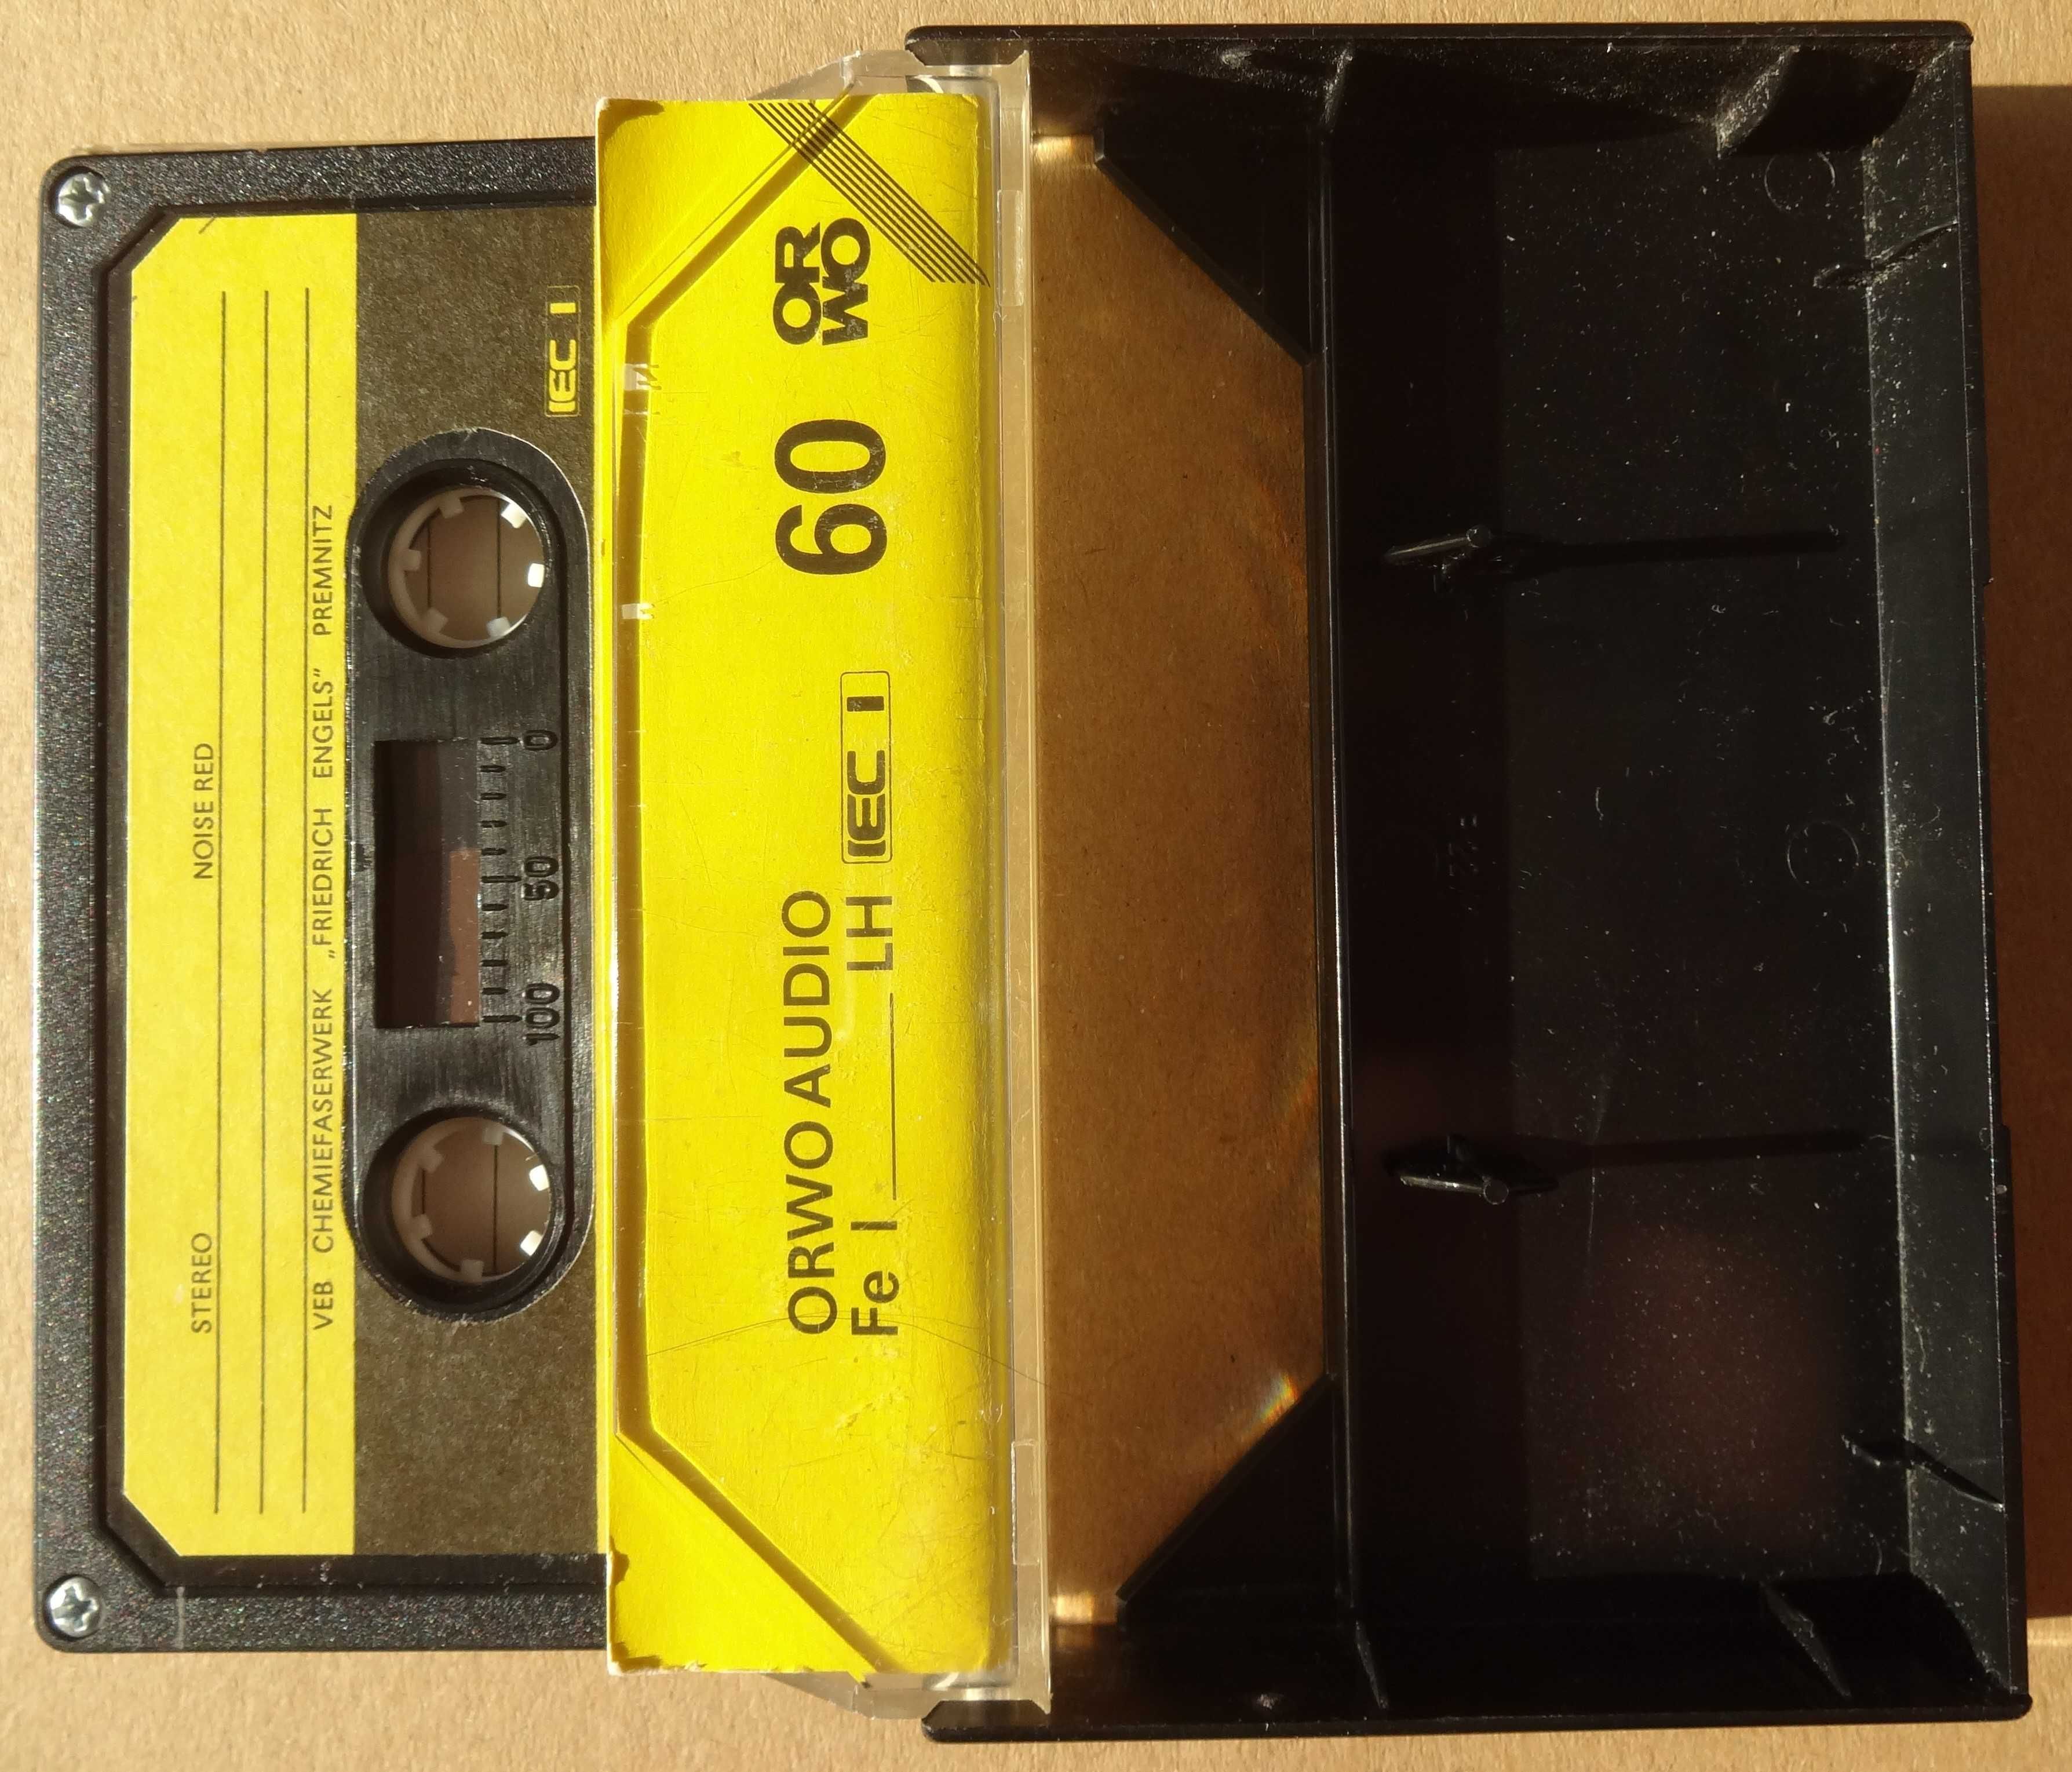 ORWO AUDIO Fe I LH 60 - kaseta żelazowa z lat 80., wkładka bez wpisów